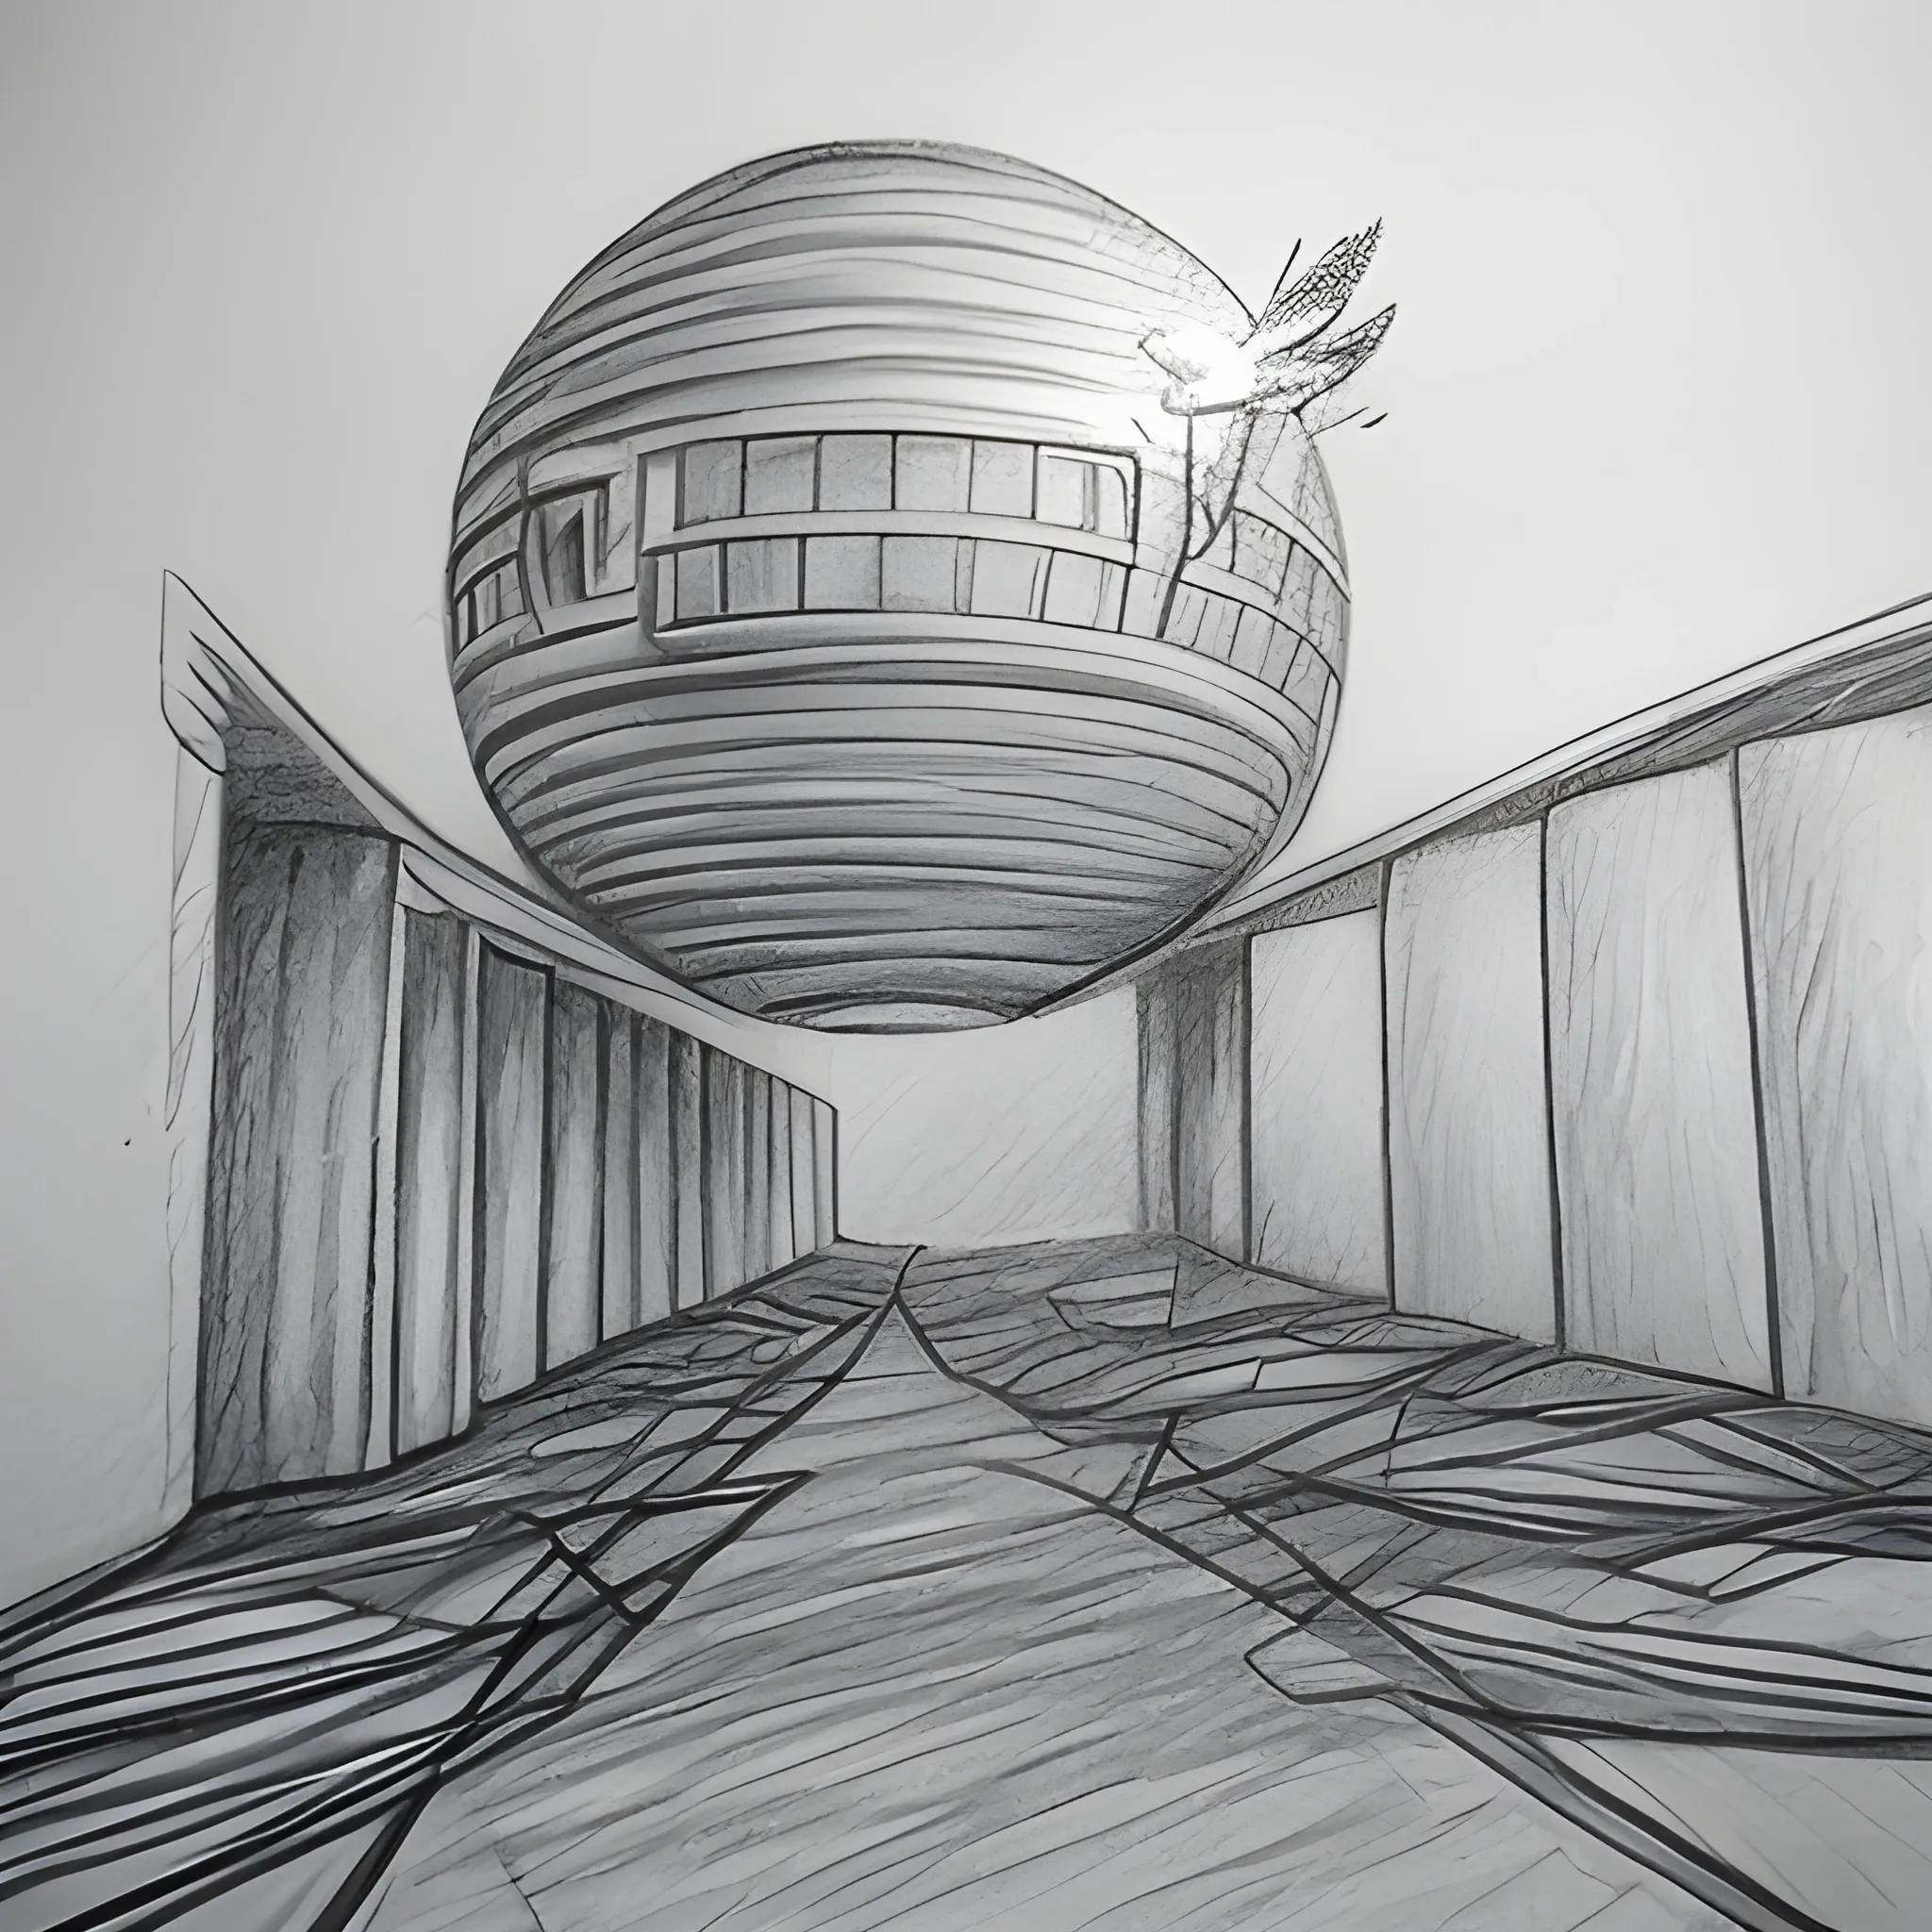 future world dream escape, Pencil Sketch